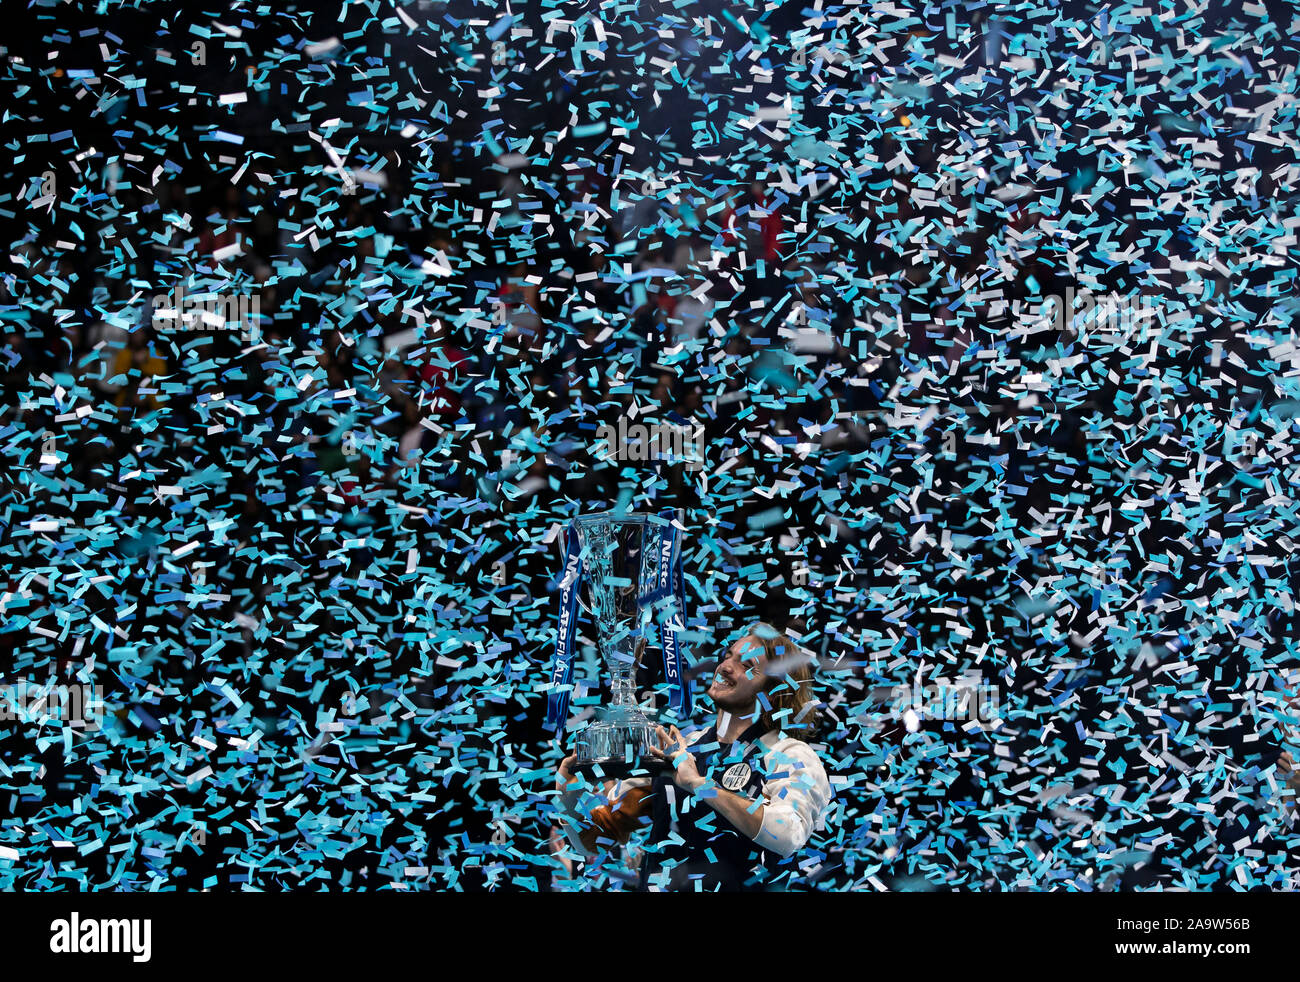 Londra, Regno Unito. 17 Nov, 2019. Stefanos Tsitsipas della Grecia celebra con il trofeo dopo i singoli final con Dominic Thiem dell'Austria presso l'Nitto ATP World Tour Finals 2019 a Londra, in Gran Bretagna il 9 novembre 17, 2019. Credito: Han Yan/Xinhua/Alamy Live News Foto Stock